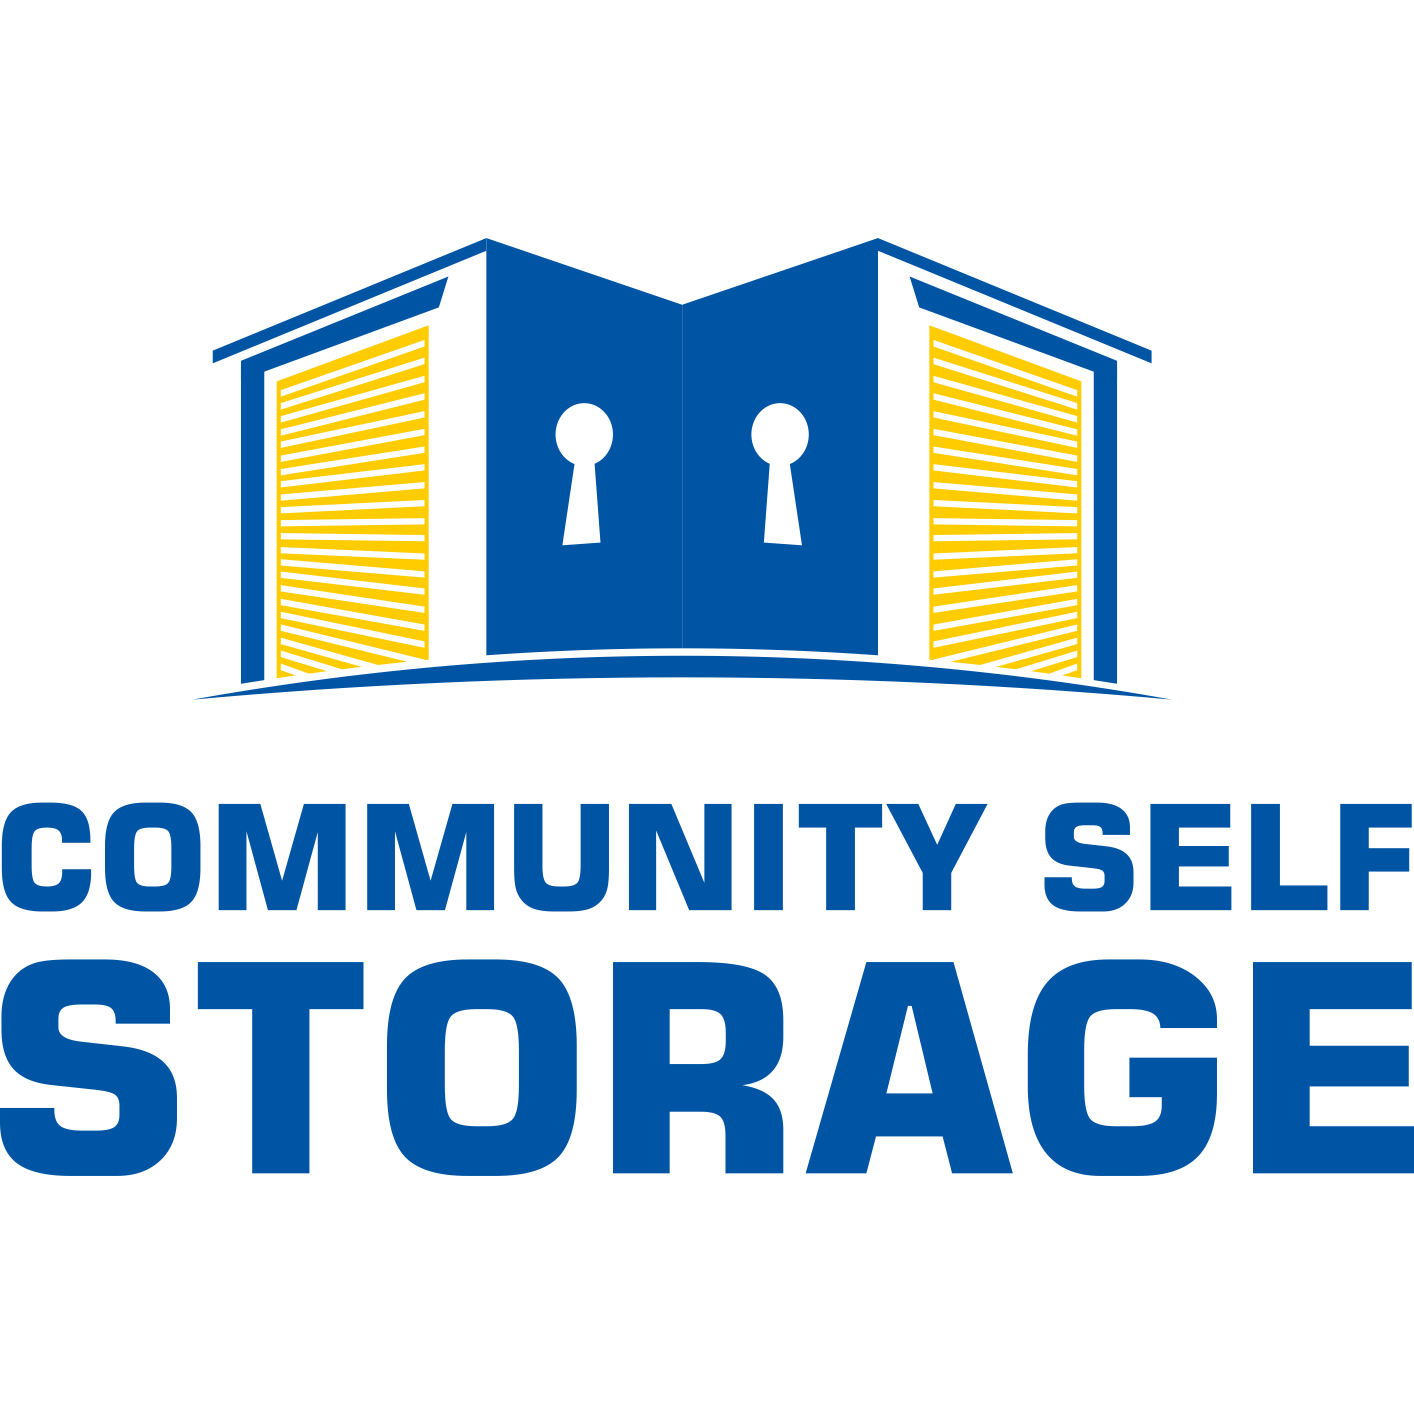 Community Self Storage - Elkhorn, NE 68022 - (402)502-5202 | ShowMeLocal.com